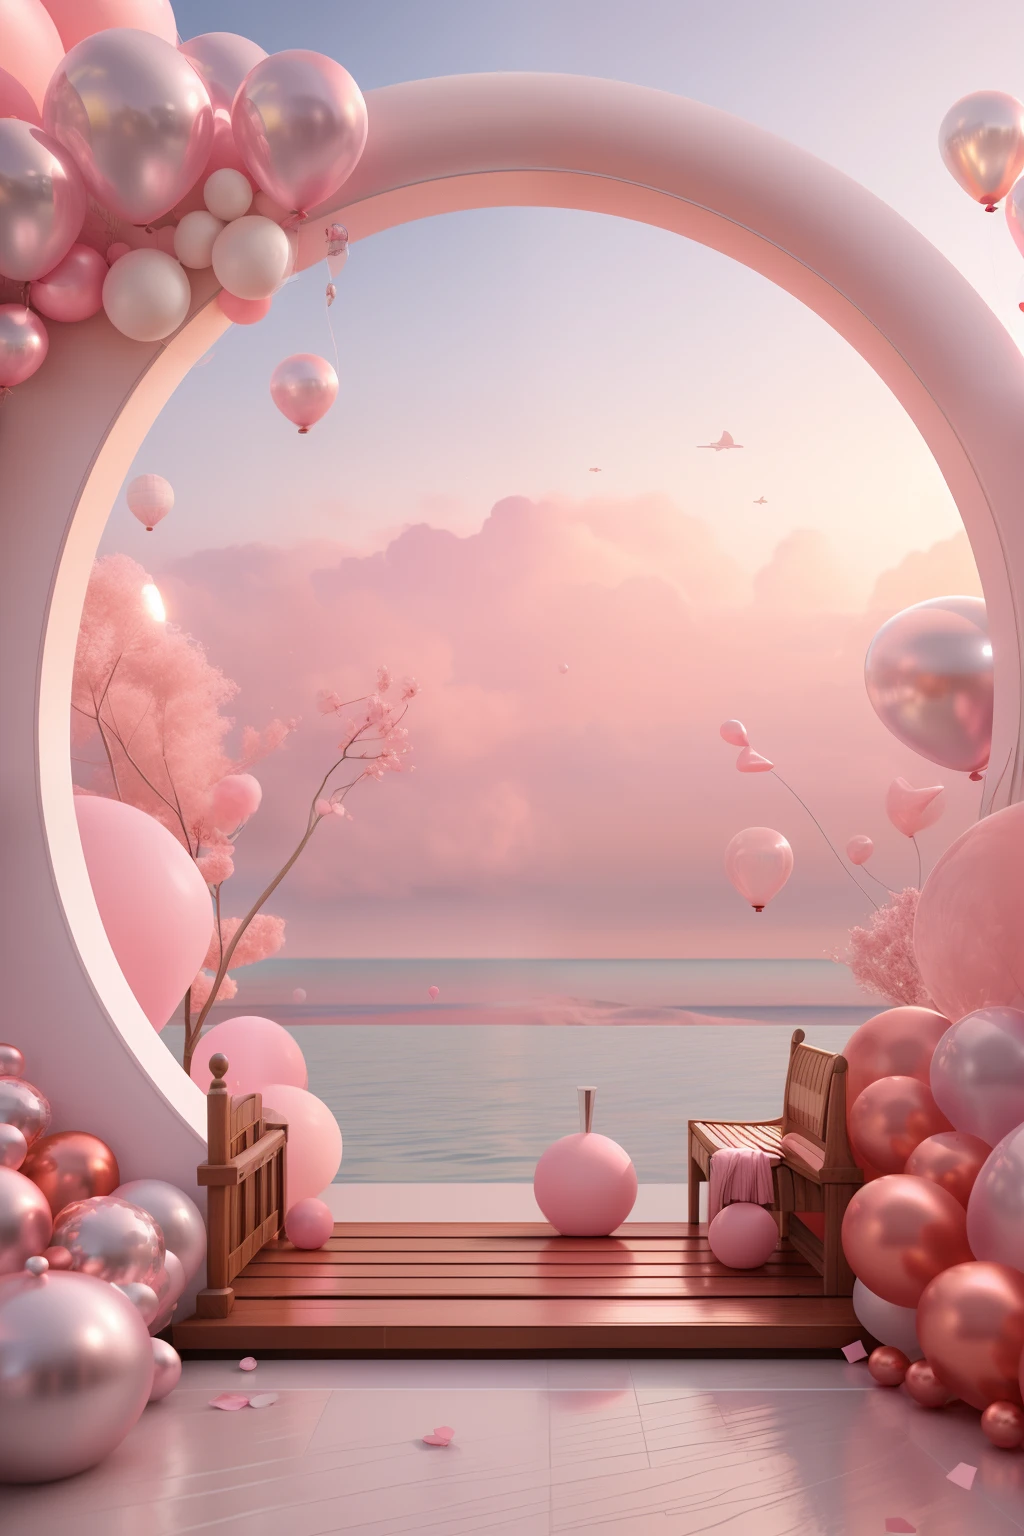 Hay un arco rosa y blanco，Con globos y bancos, la rosa era estilo, paisaje rosa, escenas de sueños, Mirando un océano rosado, Render 3D estilizado, Representación 3D estilizada, surreal 3 d render, paisaje burbujeante, Paisaje de ensueño surrealista, 3 d estilizar escena, estilizado como una representación 3d, atmósfera de ensueño y drama